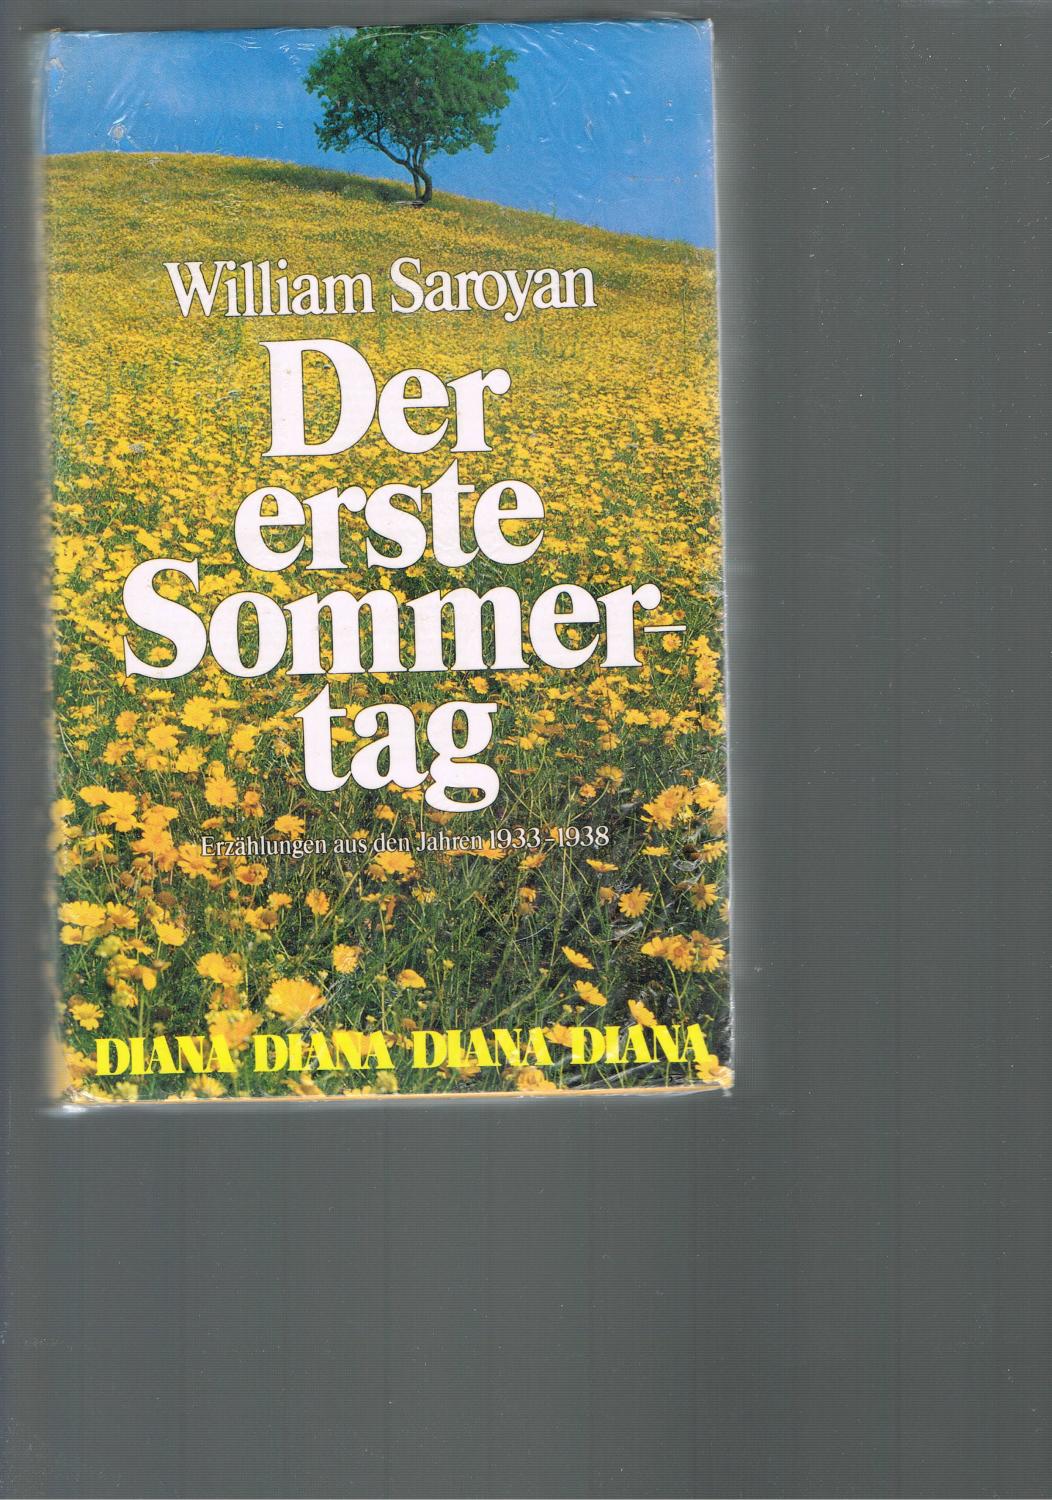 Der erste Sommertag. Erzählungen aus den Jahren 1933-1938. Deutsche Übersetzung von Lutz.